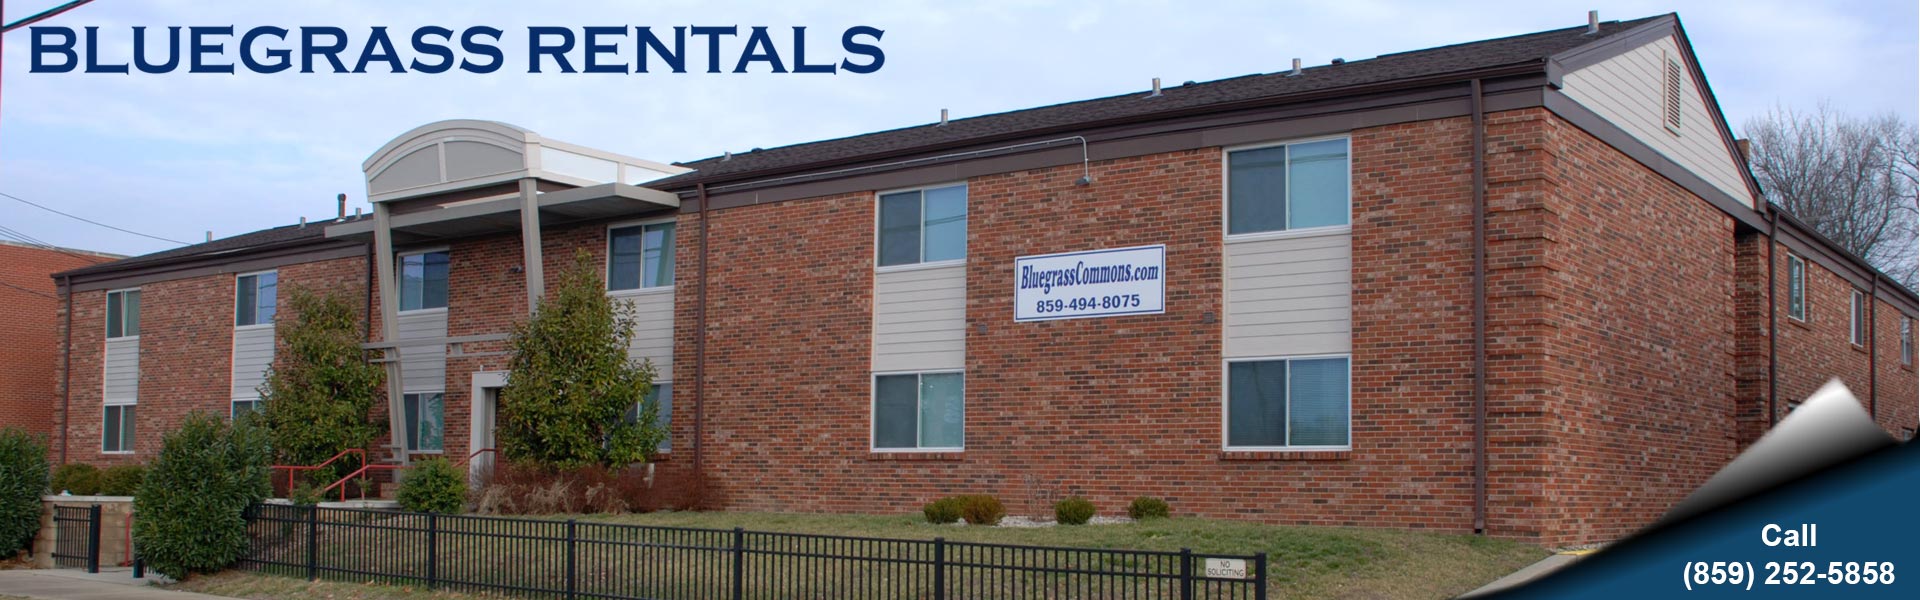 Bluegrass Rental Properties - Bluegrass Commons Banner